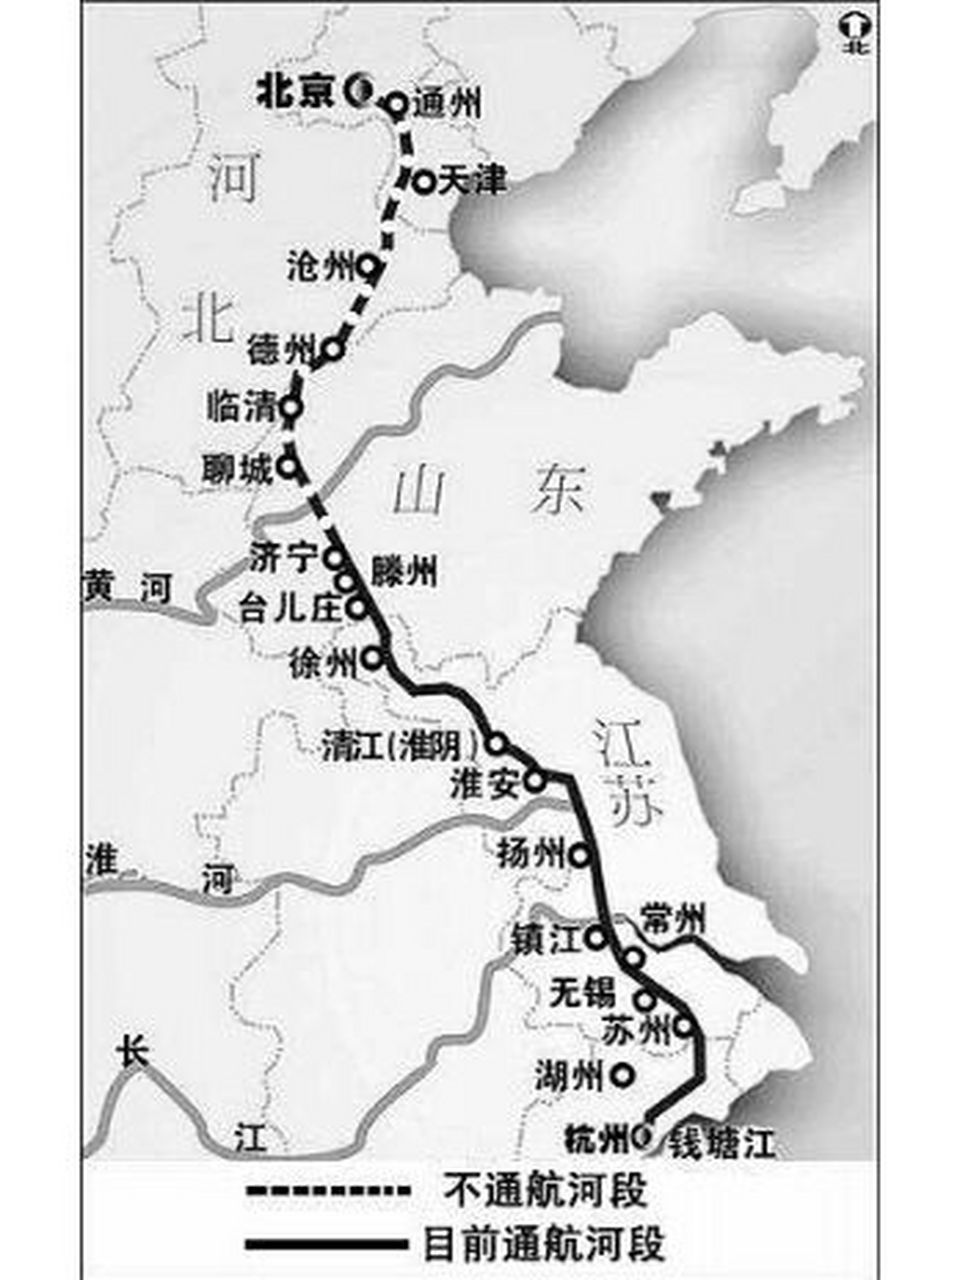 京杭大运河路线地图图片